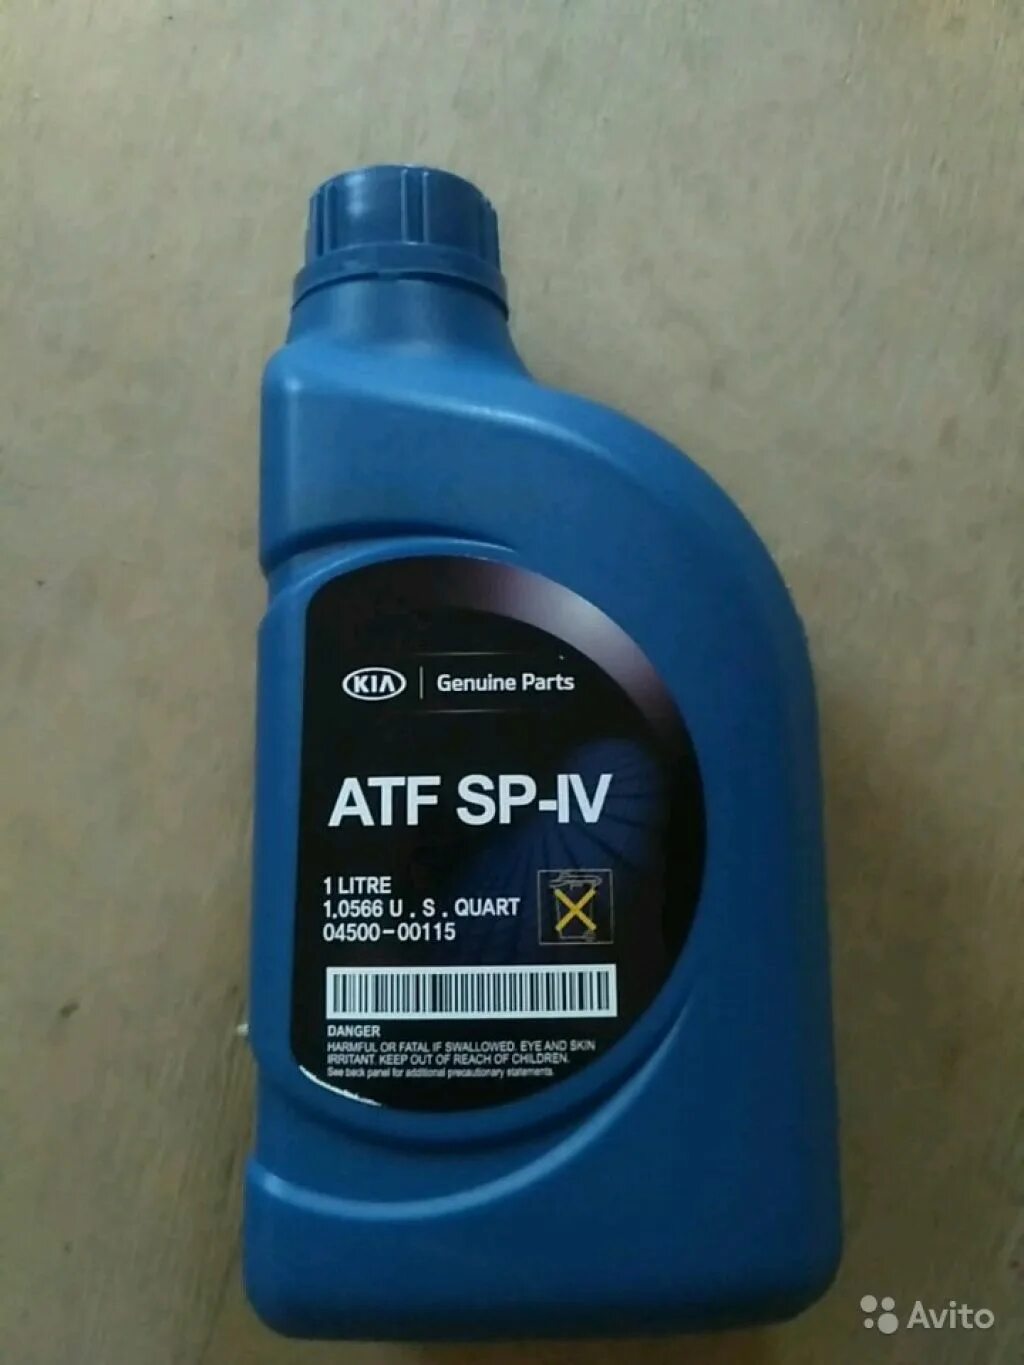 ATF sp4 Kia. Kia ATF SP-IV. ATF SP 4 Kia 4 литра. ATF SP-IV M-1.